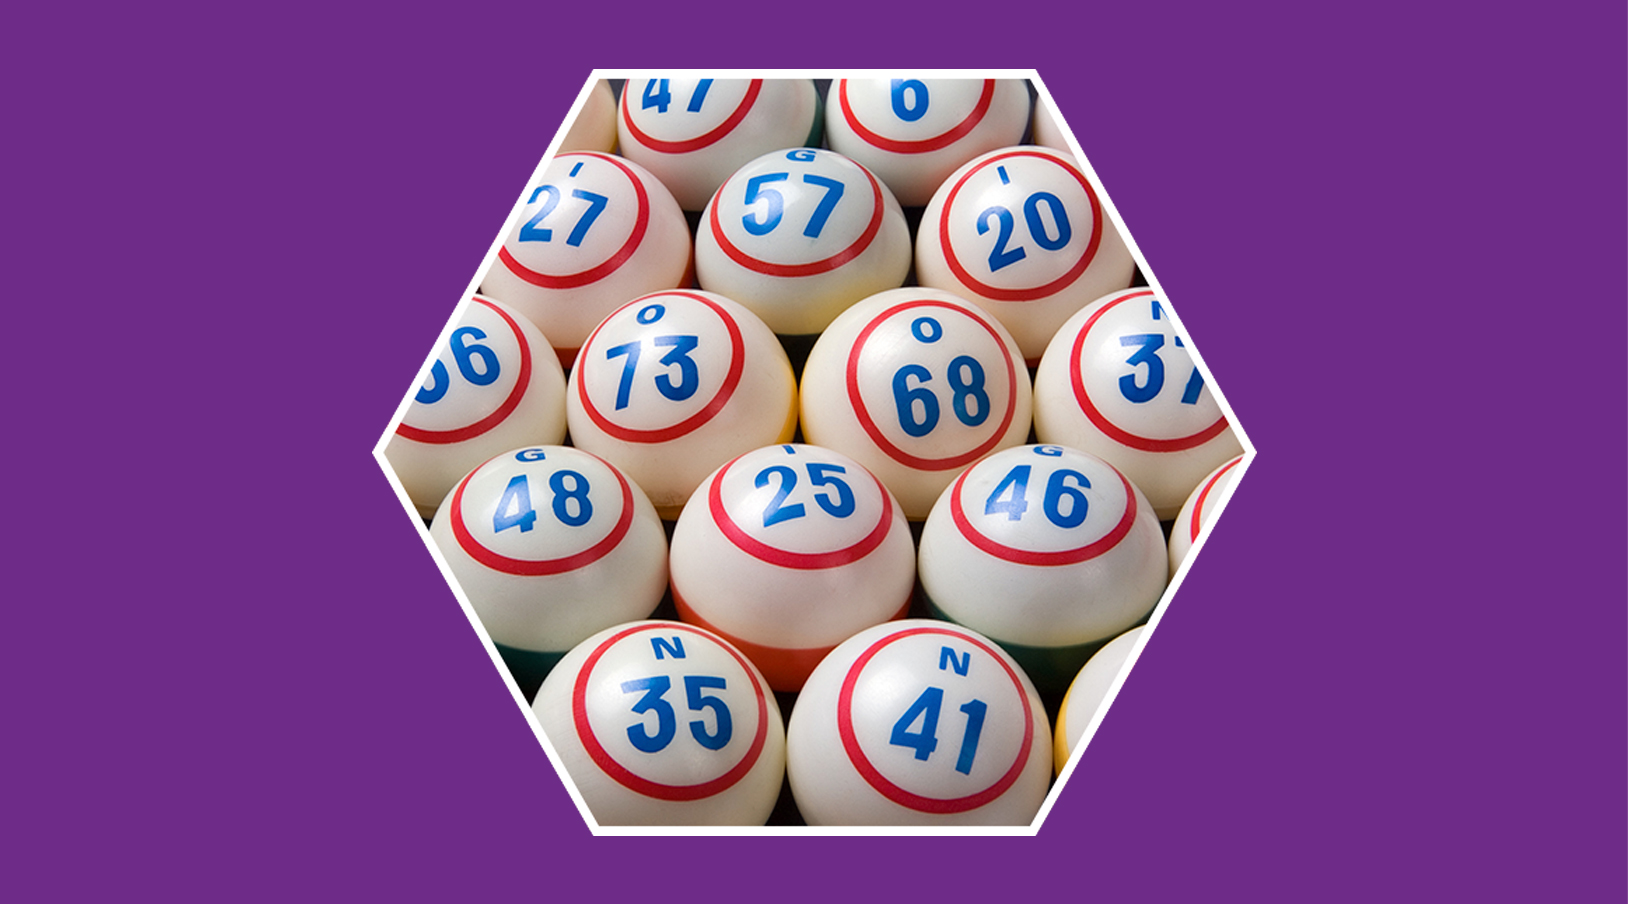 cartones!! de bingo - Apps en Google Play